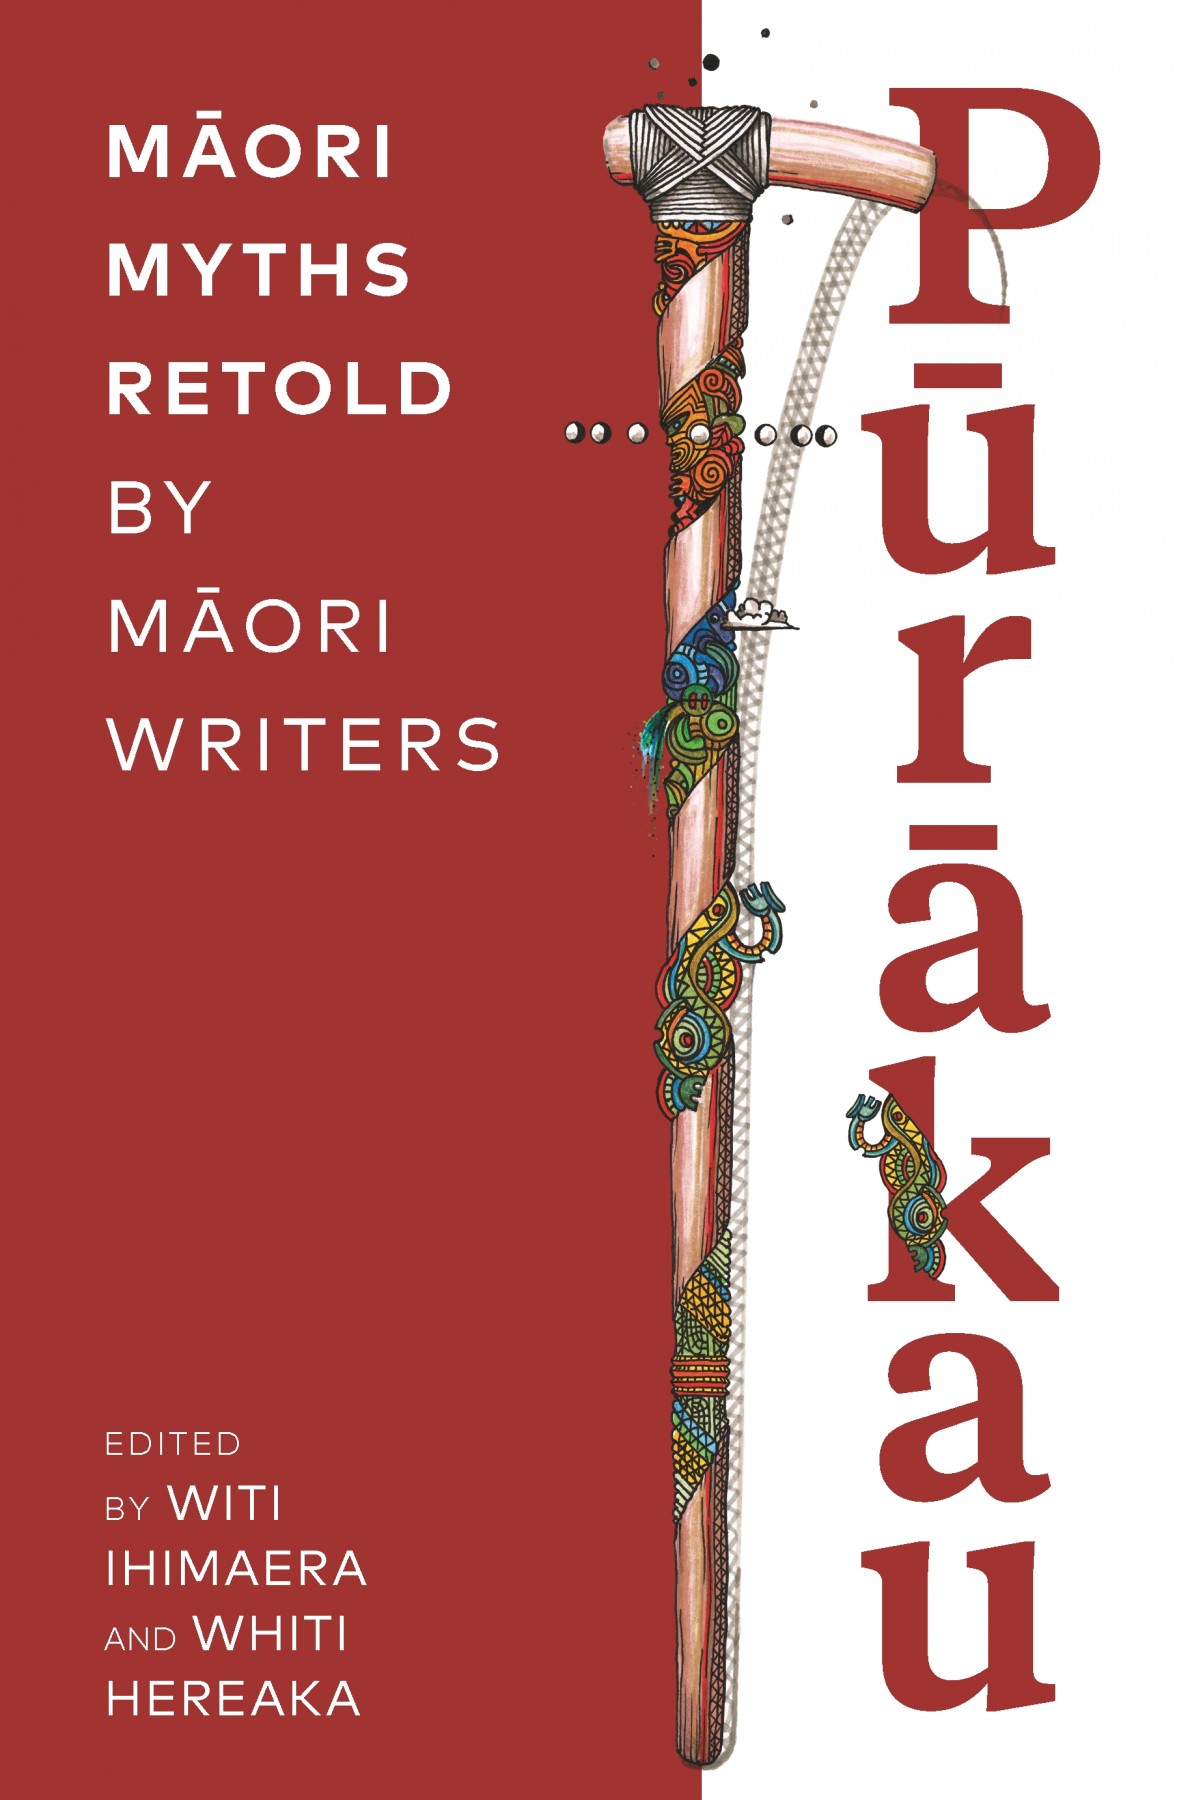 Pūrākau: Māori myths retold by Māori writers